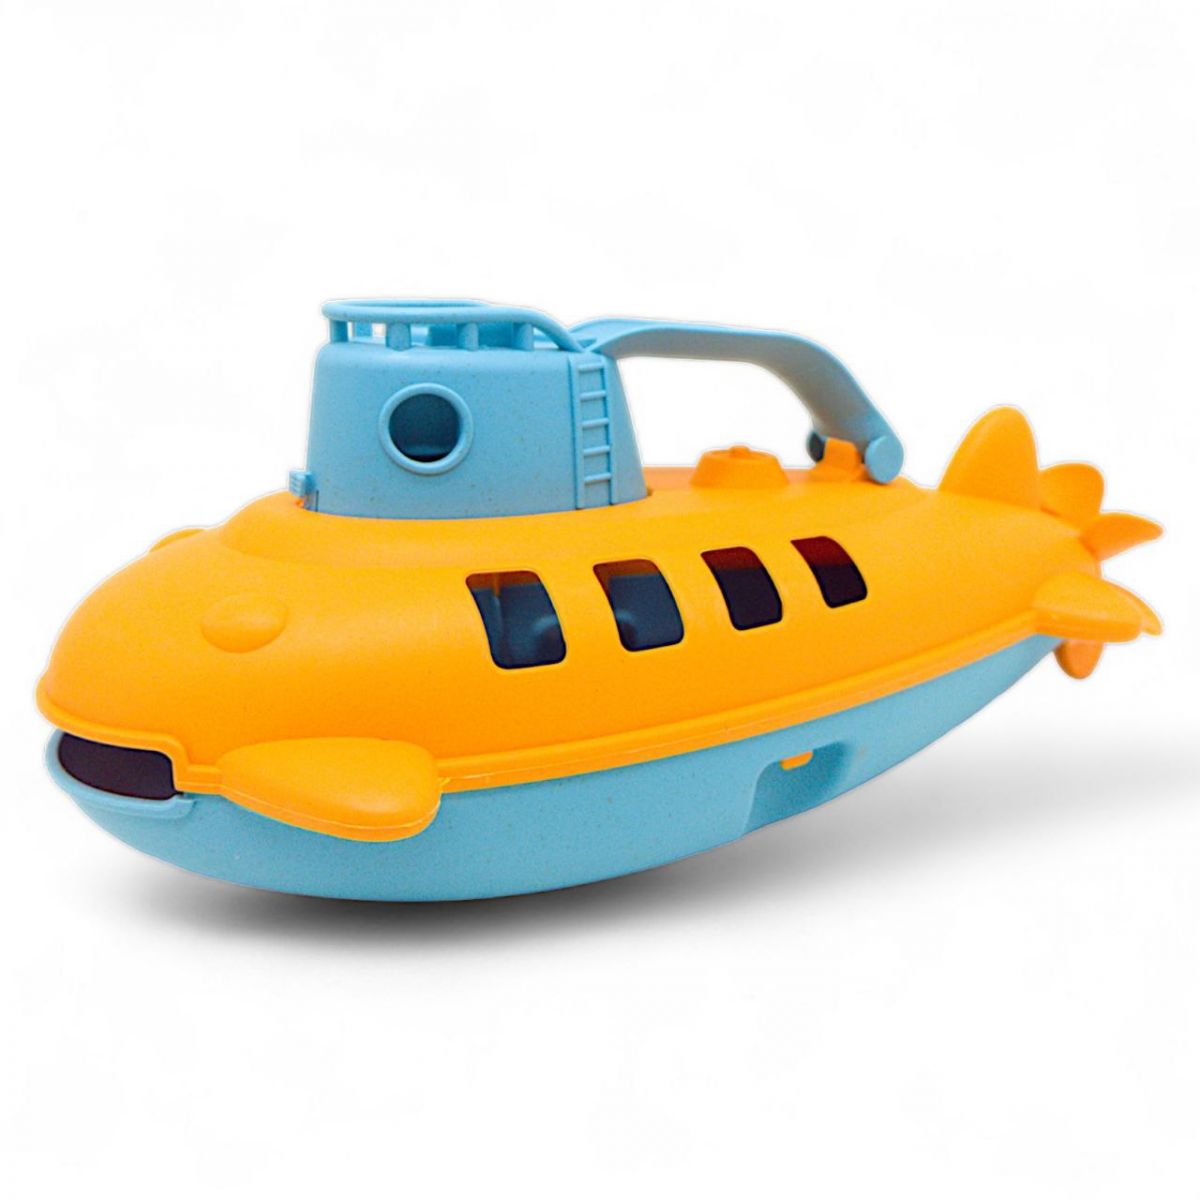 Іграшка для води "Підводний човен", 26 см